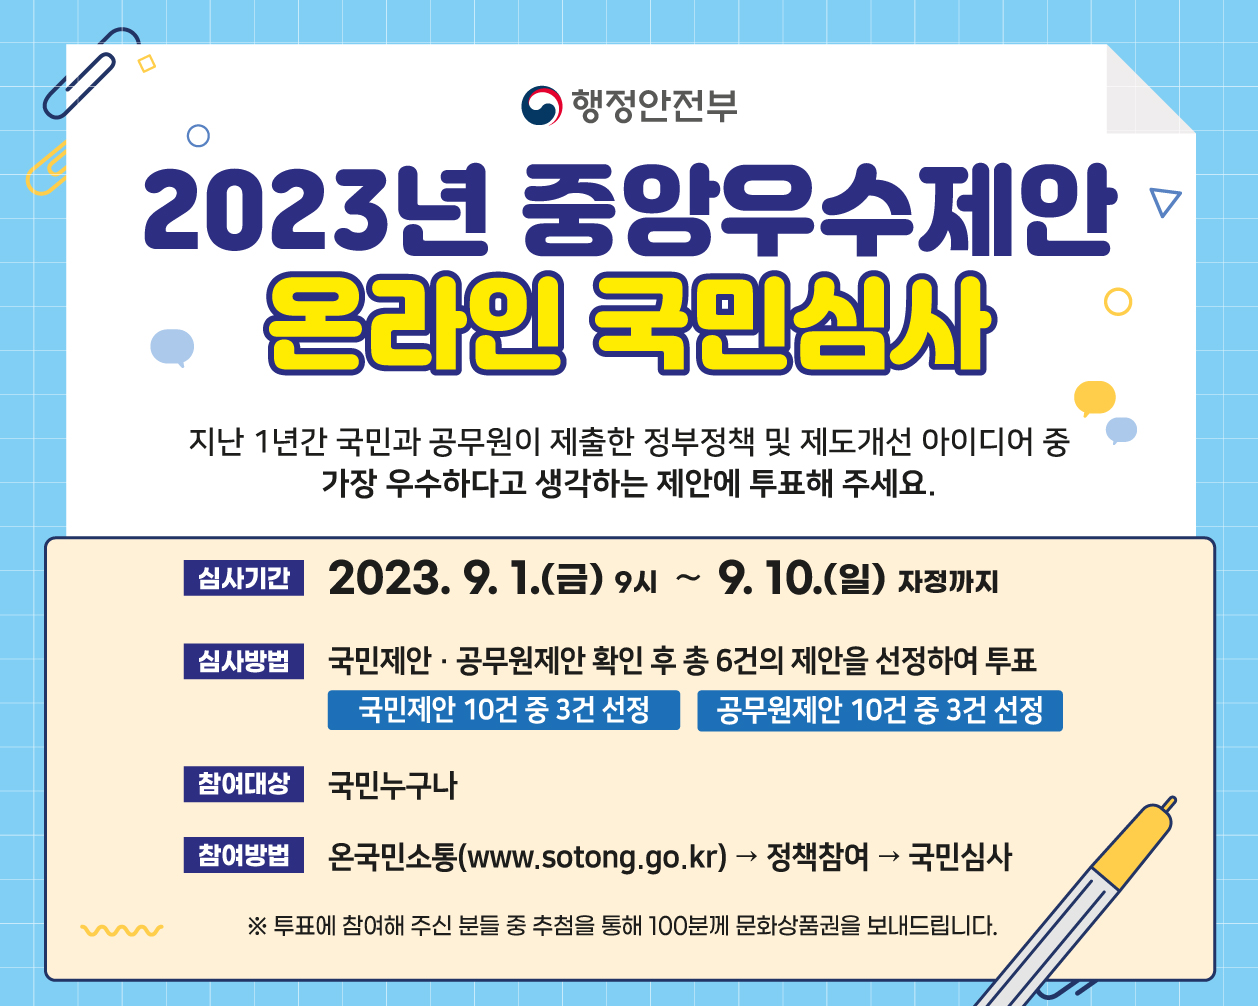 2023년 중앙 우수제안 온라인 국민심사 참여 및 홍보 안내 1